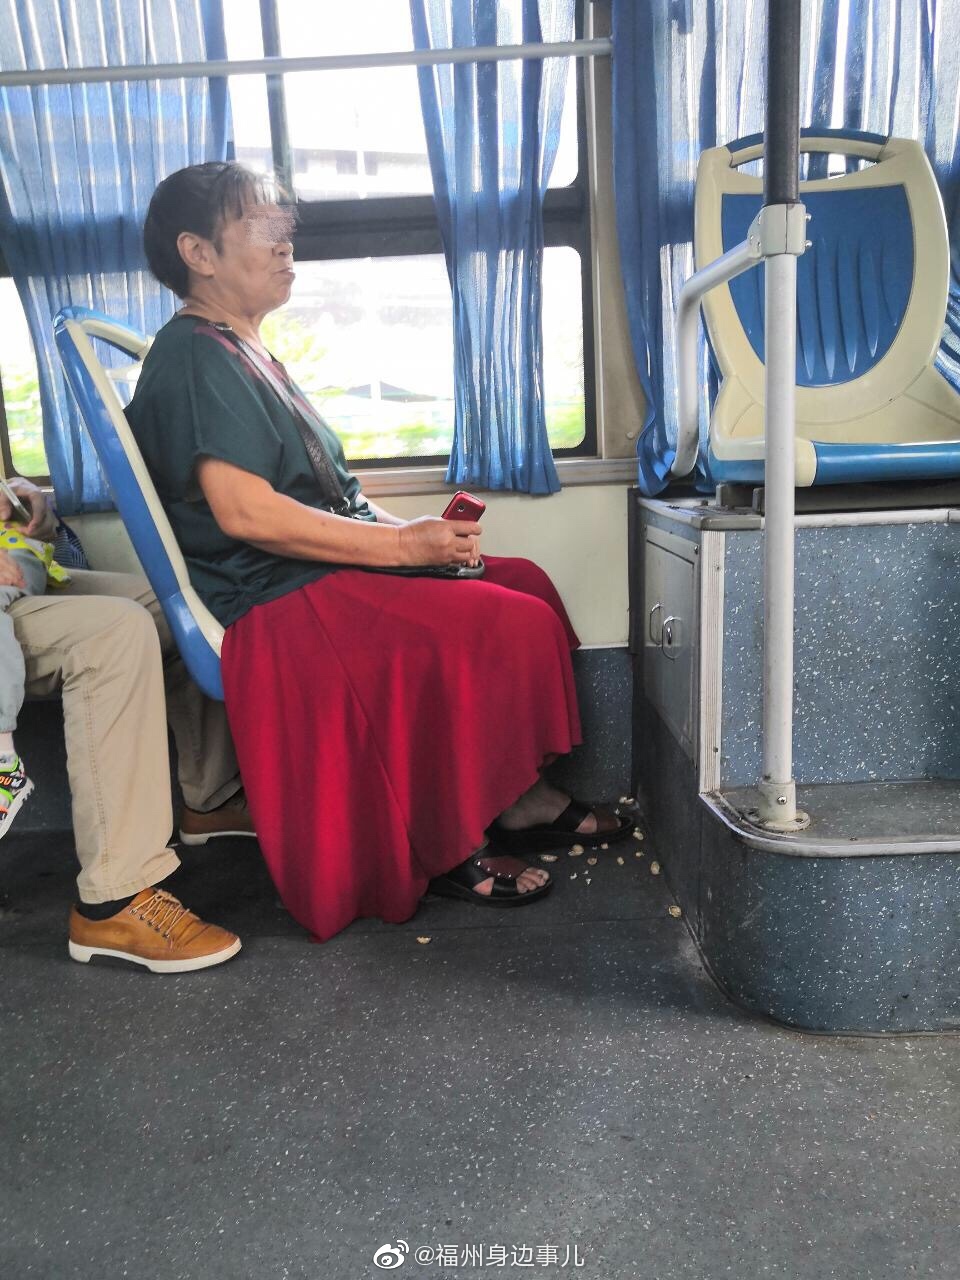 公交车上的不文明行为图片